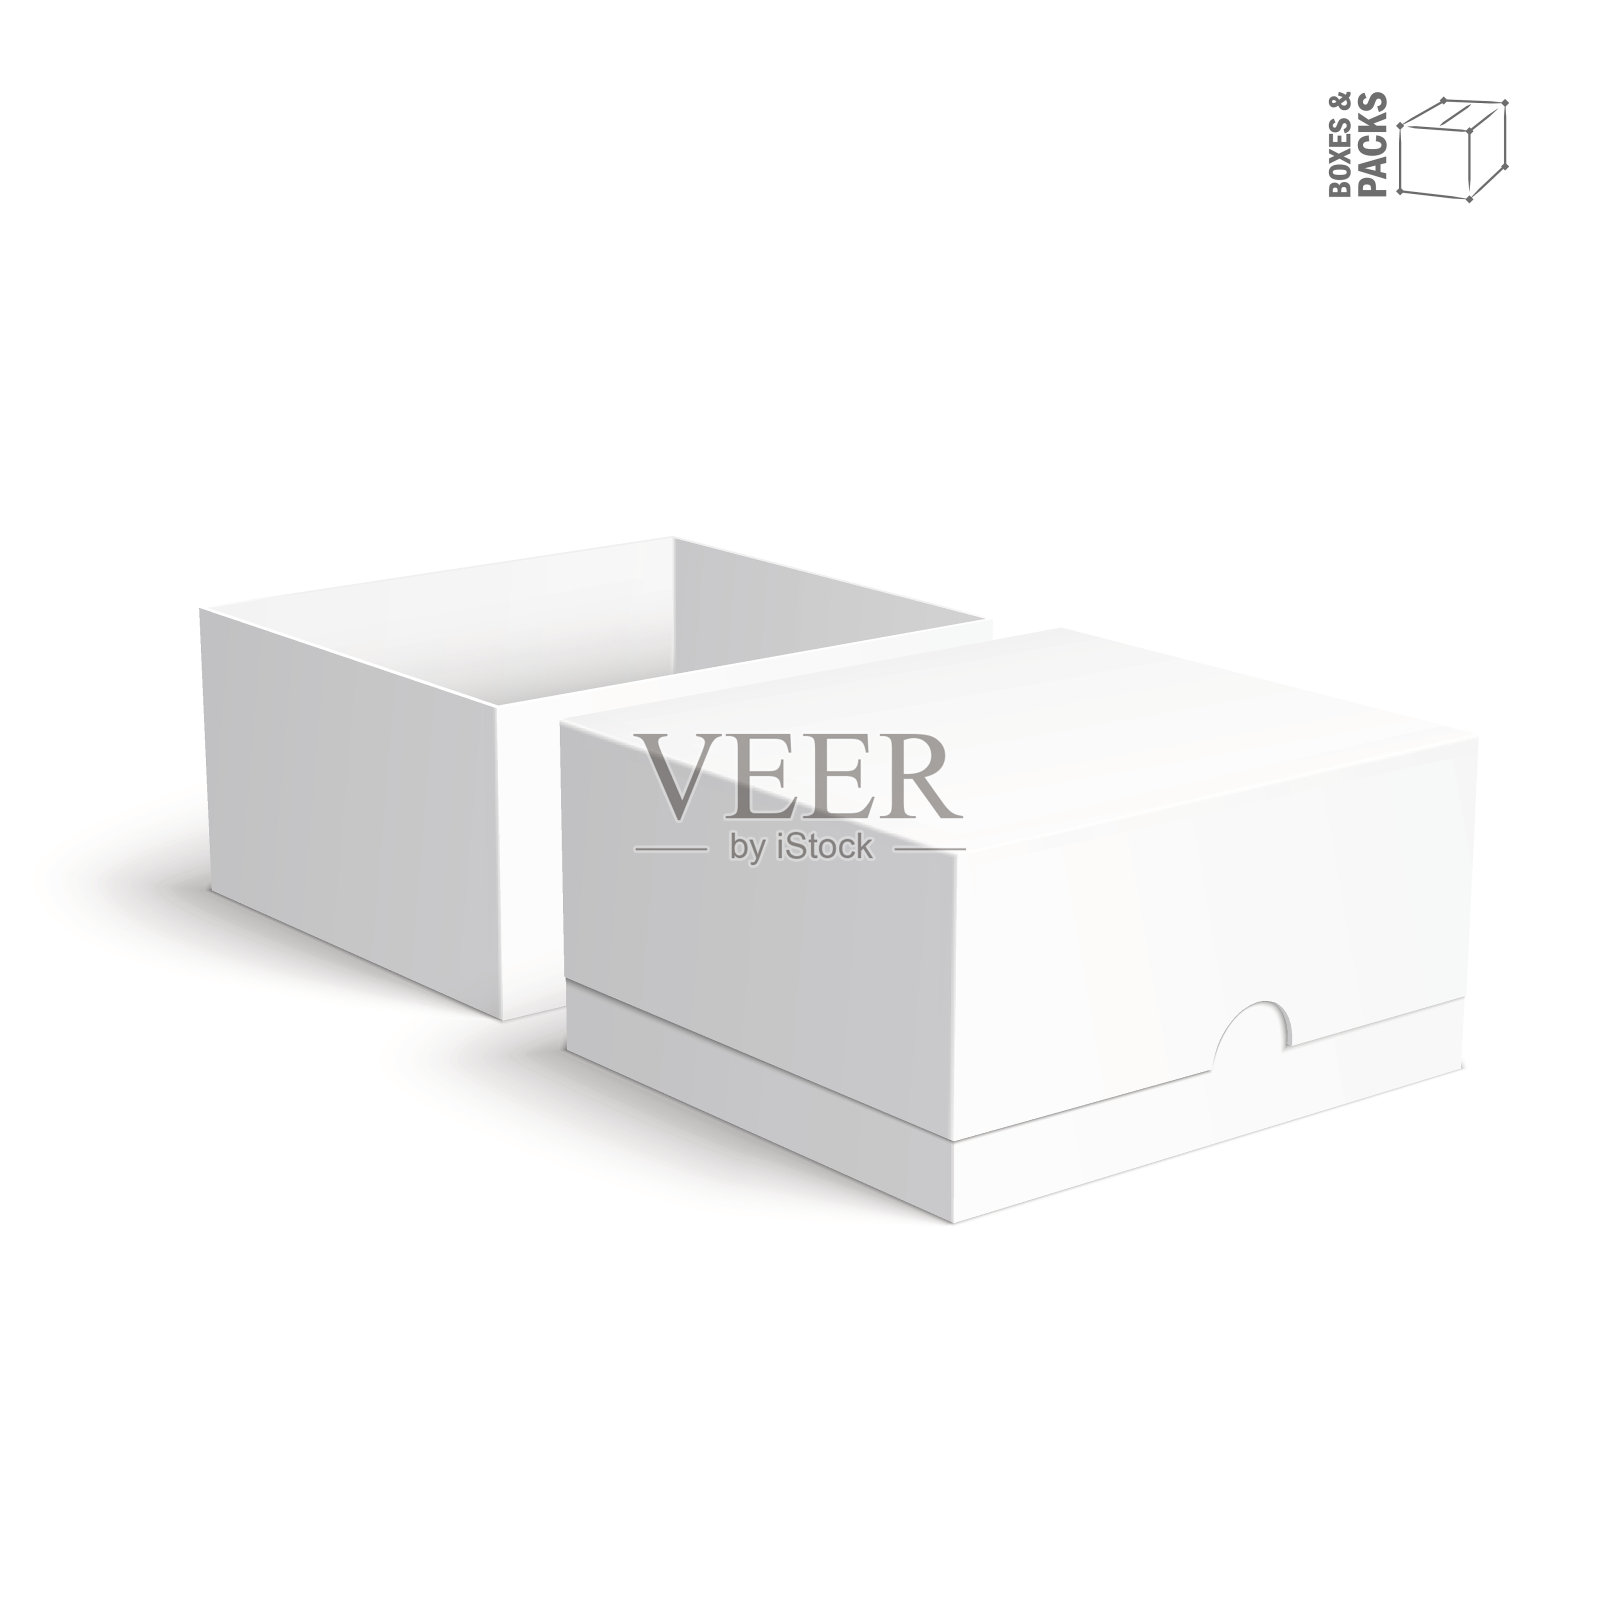 空白纸或硬纸盒模板在白色背景上插画图片素材